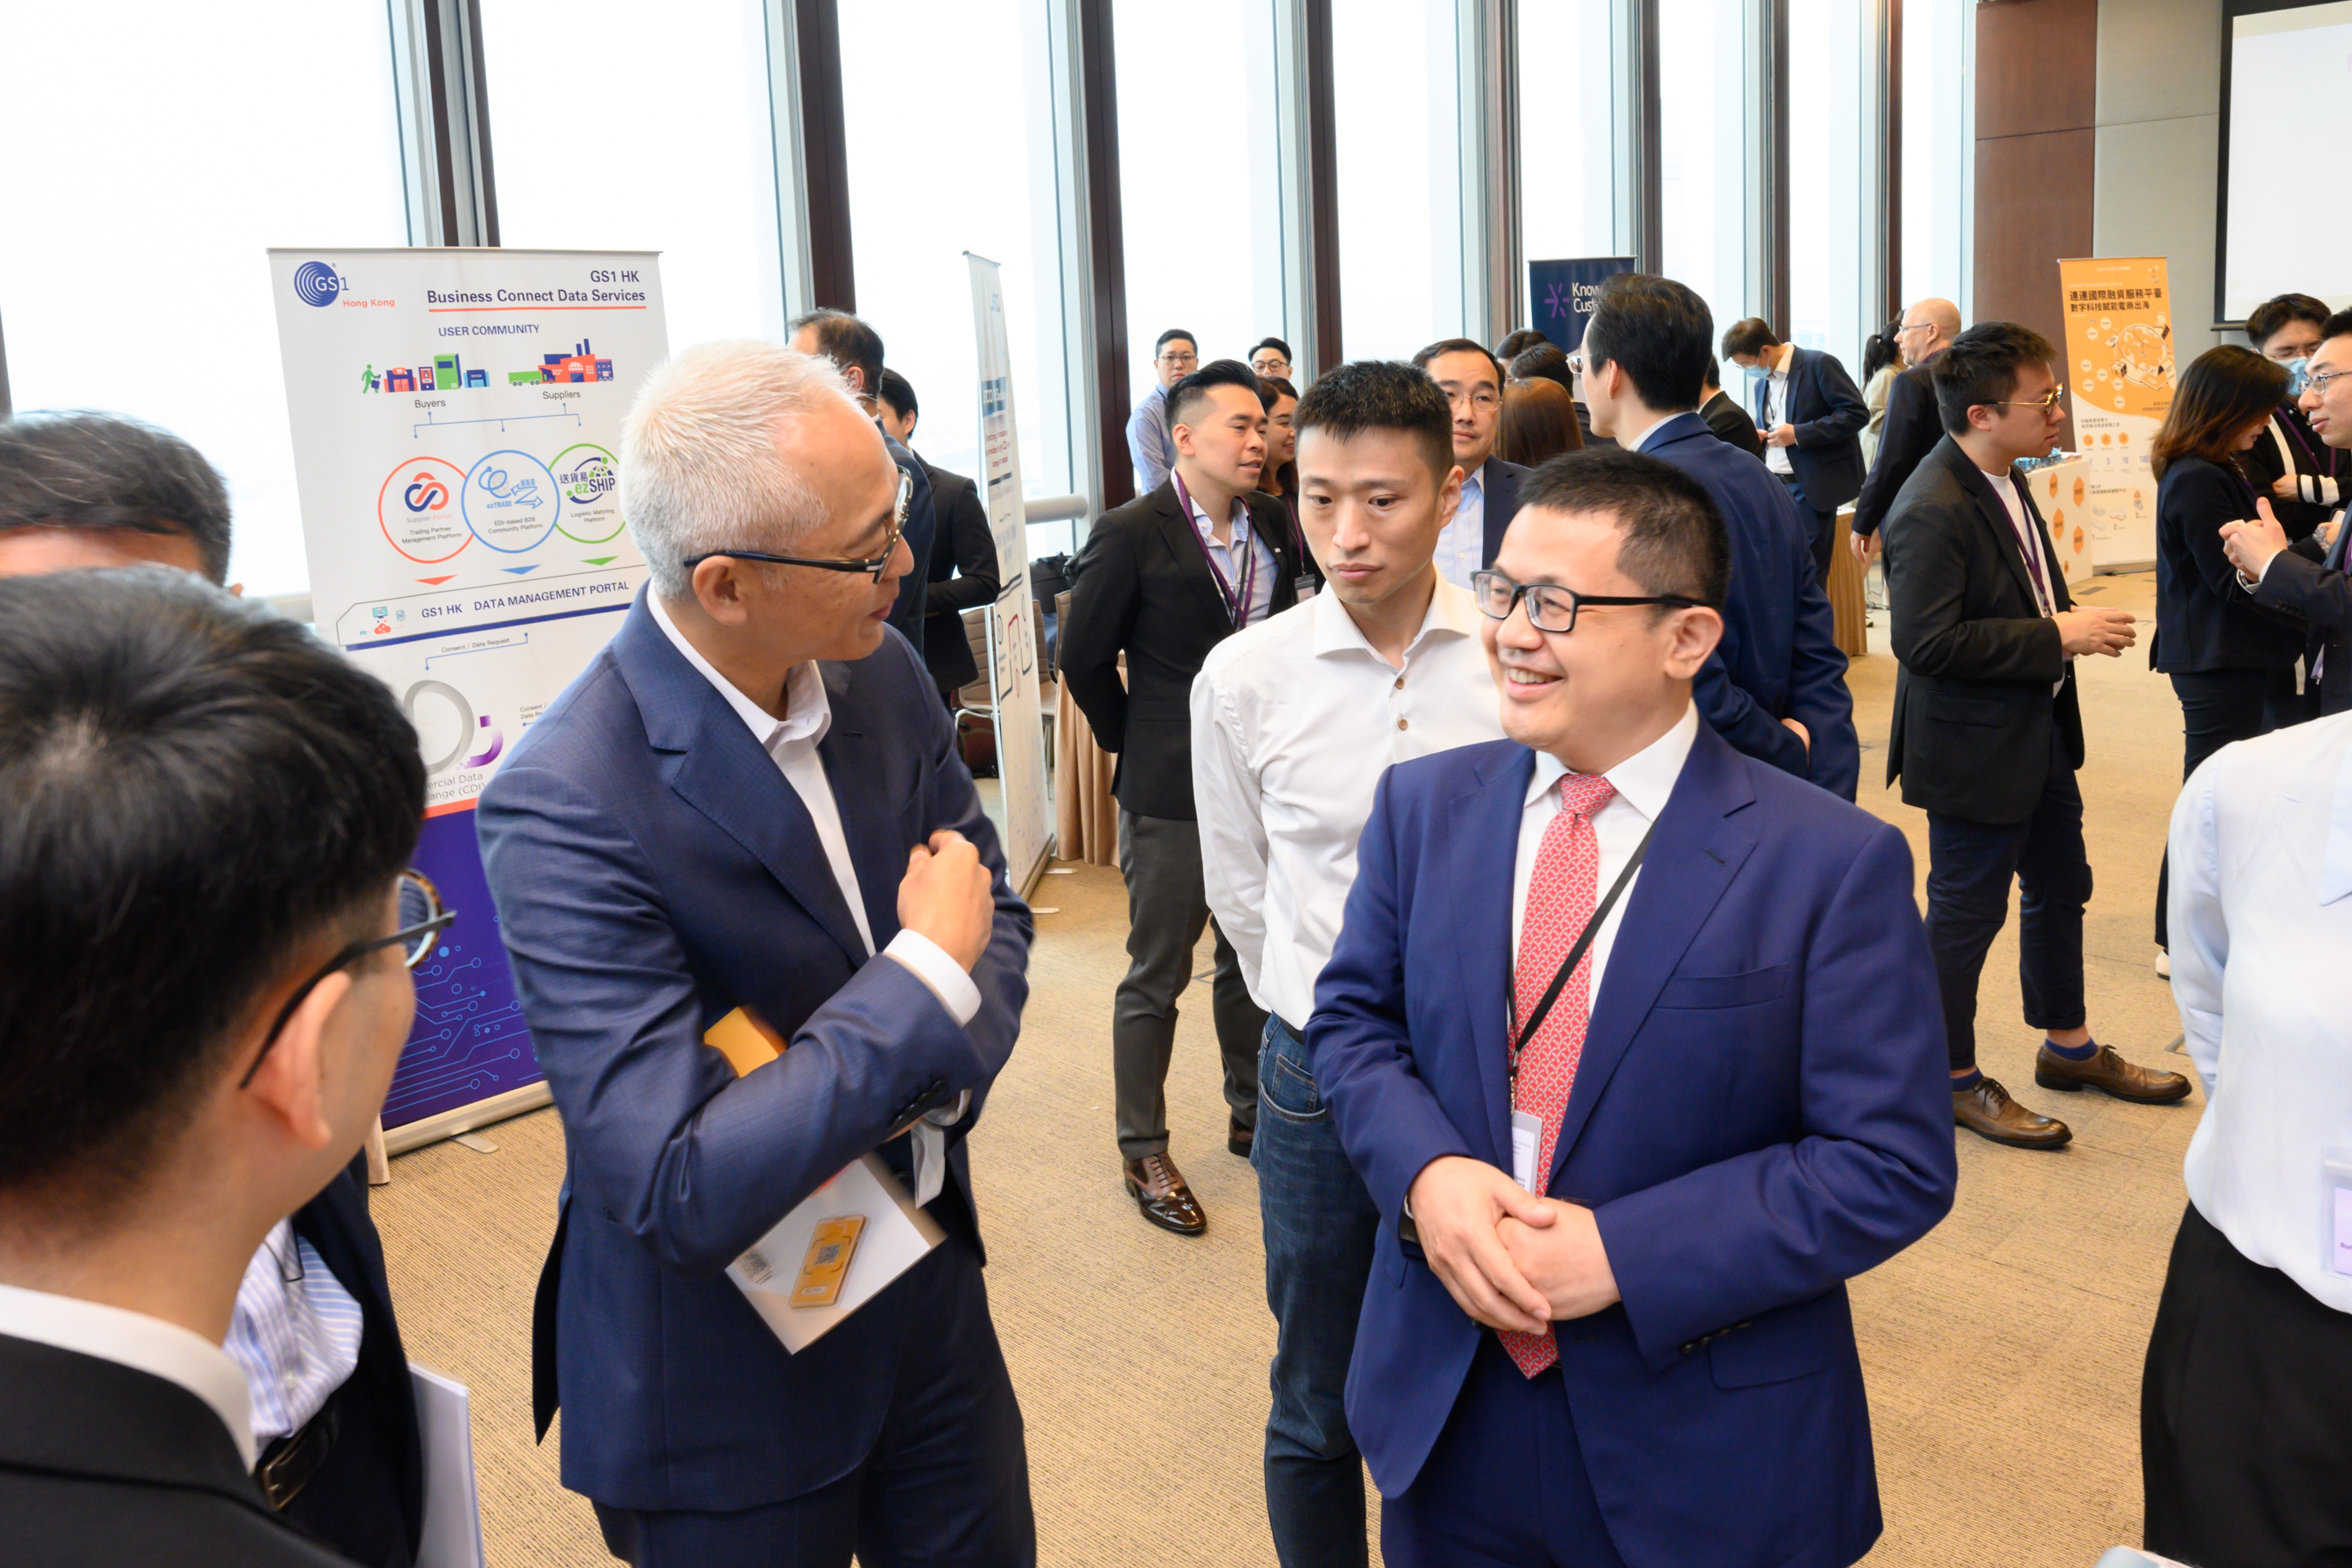 金管局副總裁李達志參觀多個數據分析服務供應商和數據提供方於峰會現場設置的展覽。